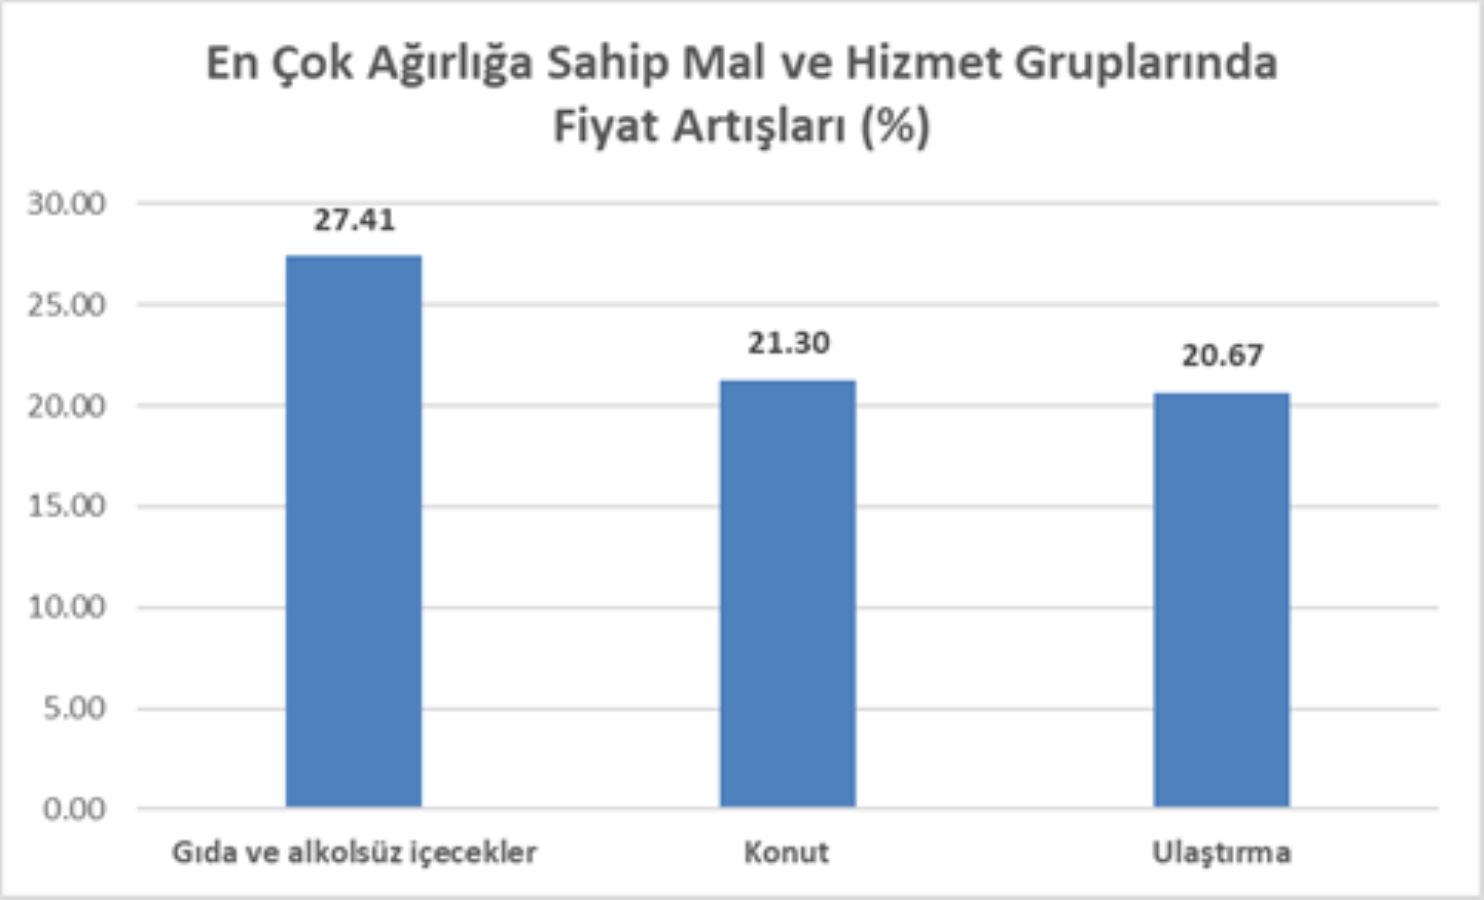 Öztrak ENAG verilerini paylaştı, TÜİK'e tepki gösterdi